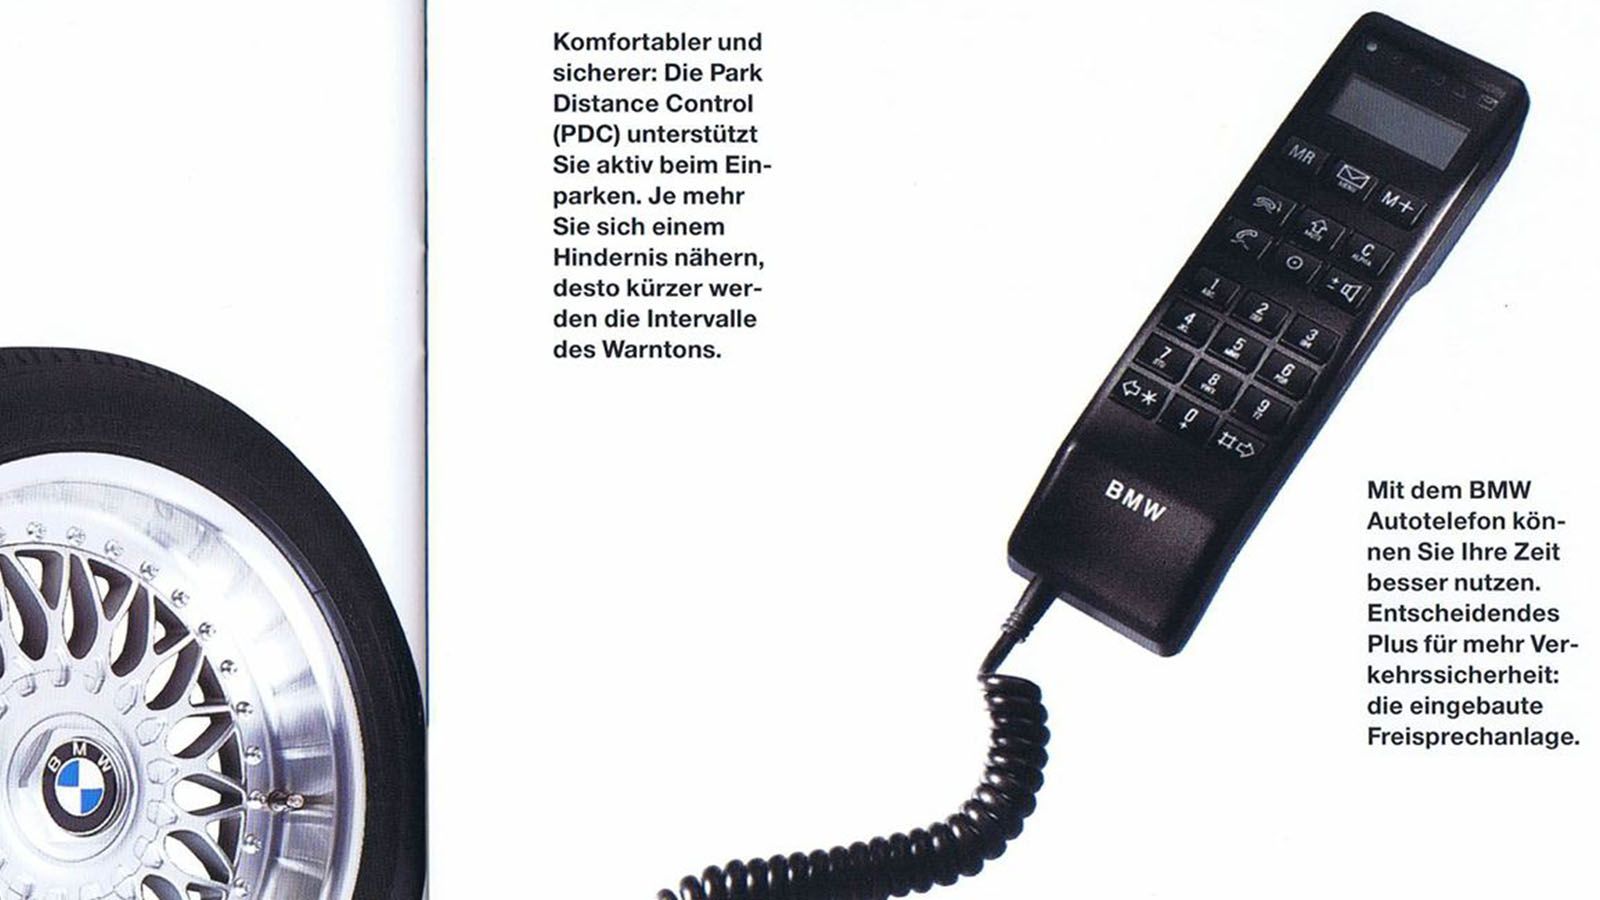 Телефон 7 383. Сотовый телефон БМВ. Автотелефон Bosch. Telephone car игрушка. Радиотелефон до 7 километров.